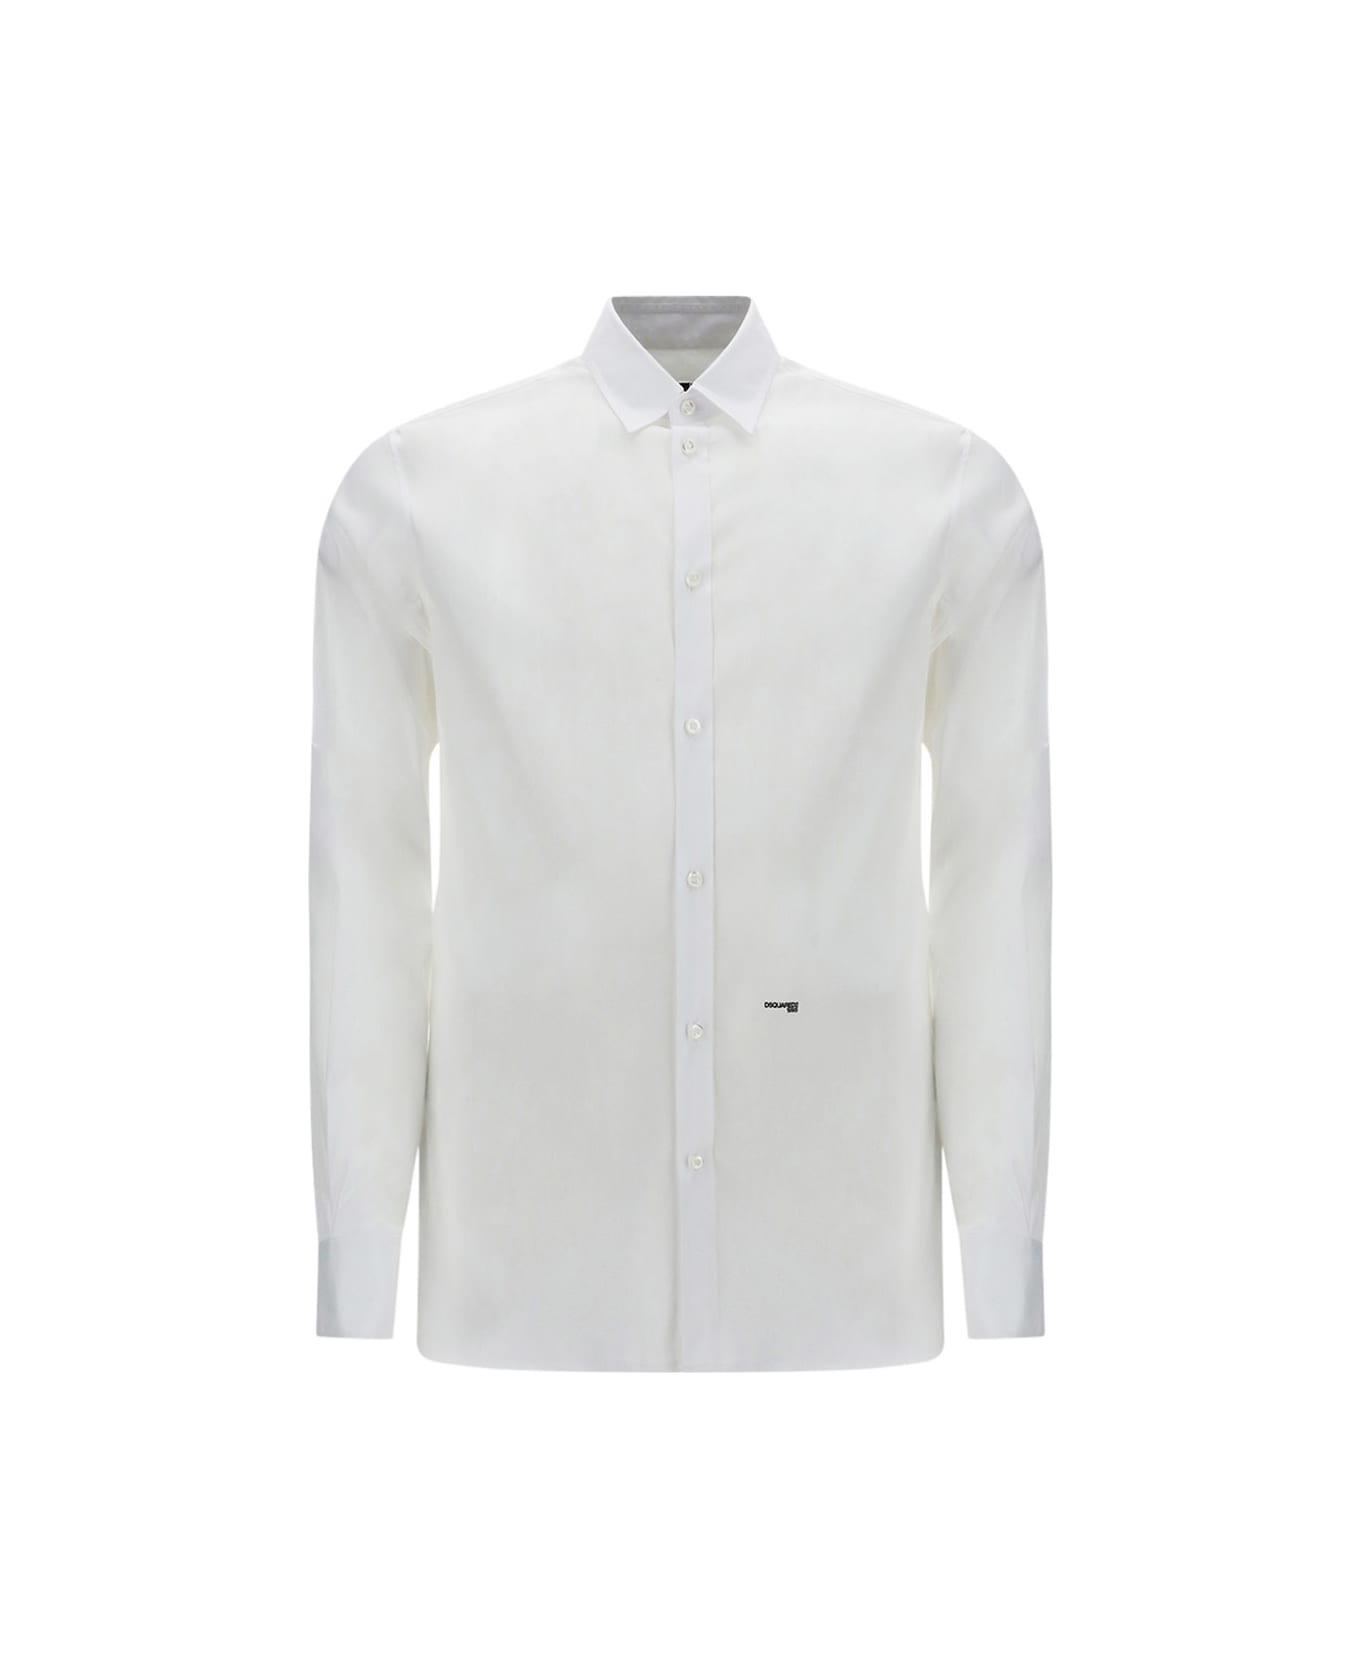 Dsquared2 Shirt - White